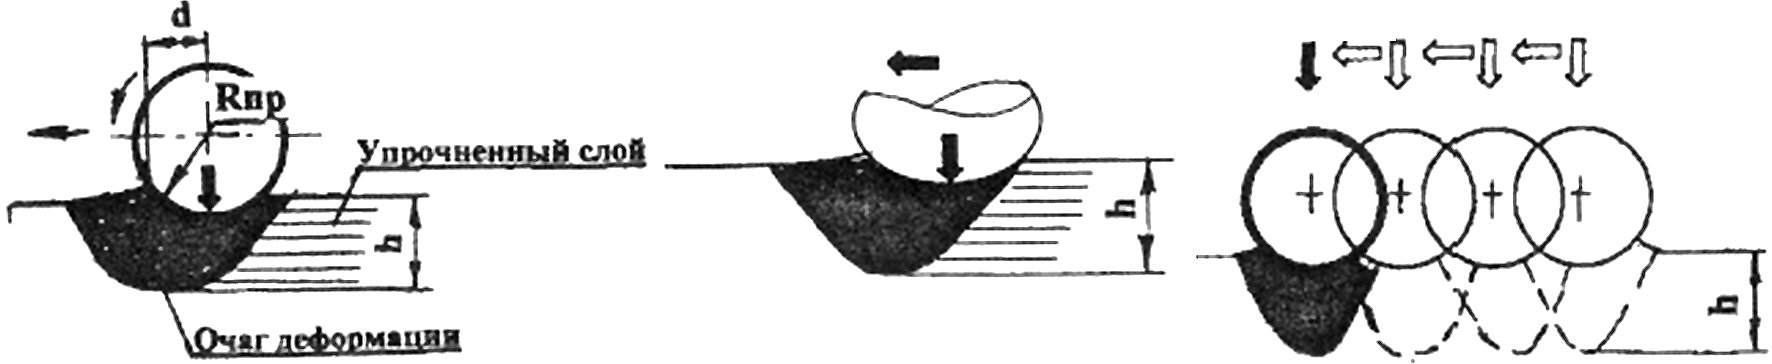  Основные схемы взаимодействия деформирующего элемента с обрабатываемой поверхностью: а - качение; б - скольжение; в - внедрение.